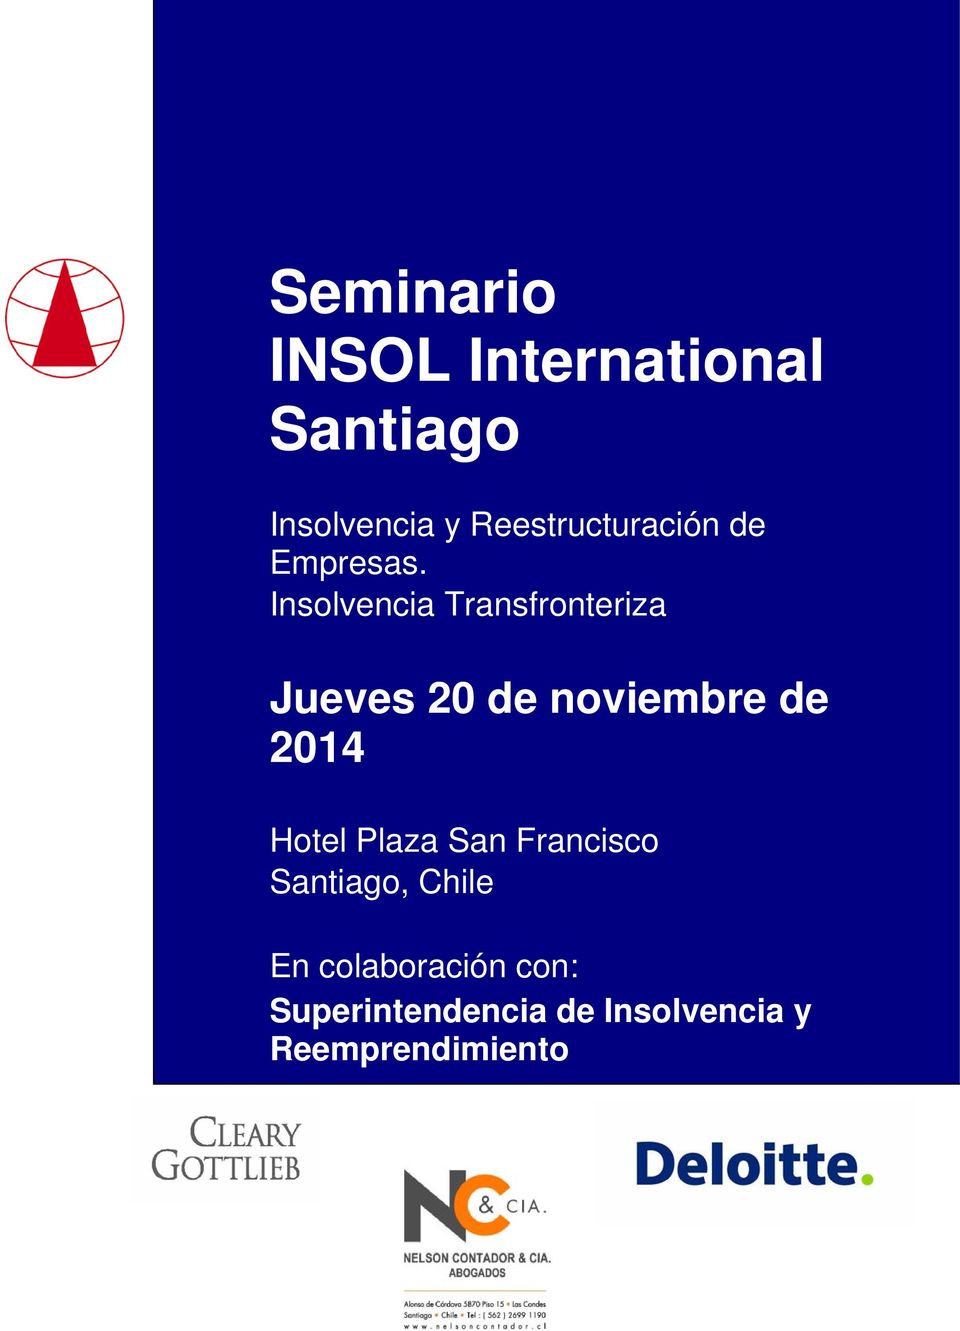 Insolvencia Transfronteriza Jueves 20 de noviembre de 2014